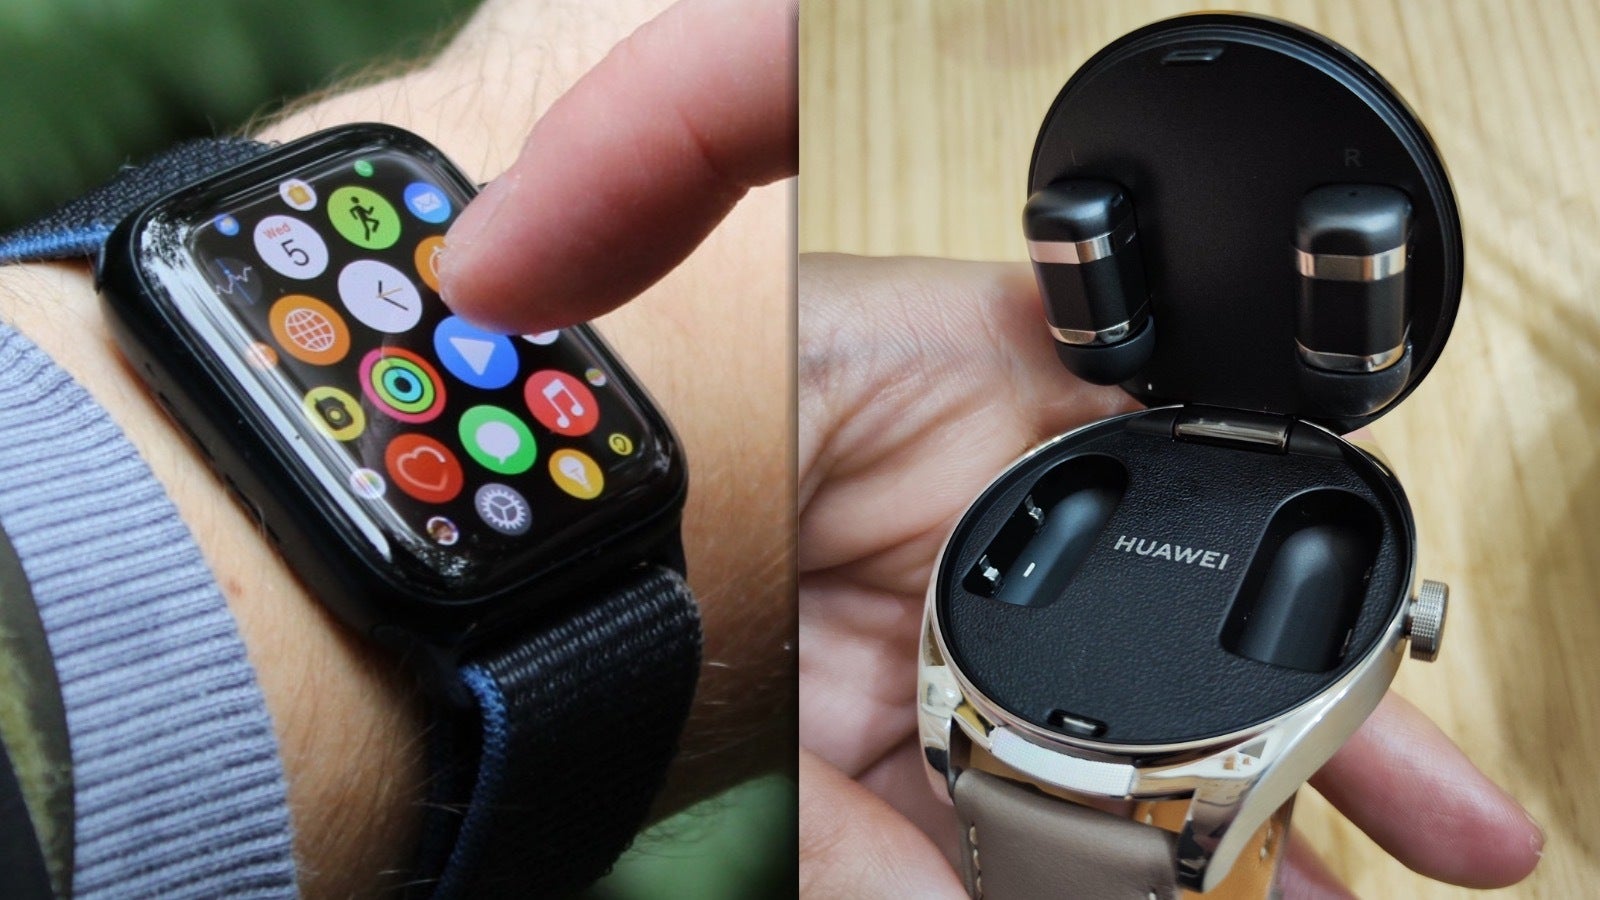 ¡Huawei trae innovación!  - ¡Adiós, AirPods y Apple Watch!  ¡Los revolucionarios auriculares híbridos de Huawei nos dan el futuro ahora!